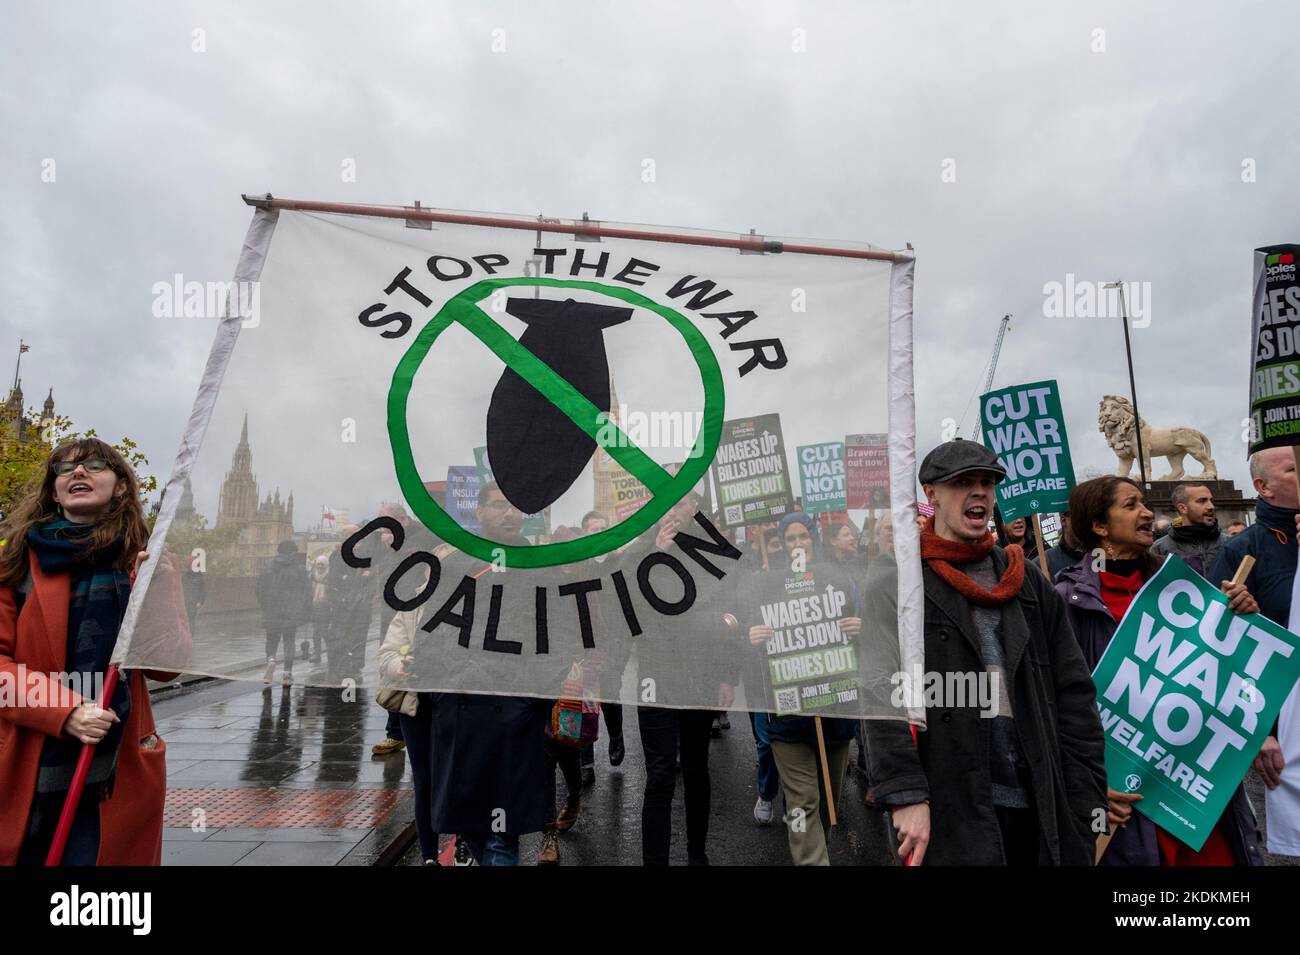 Protestation contre la guerre et les politiques du gouvernement conservateur avec des pancartes « Stop the War Coalition » et « Cut War Not Welfare » Banque D'Images